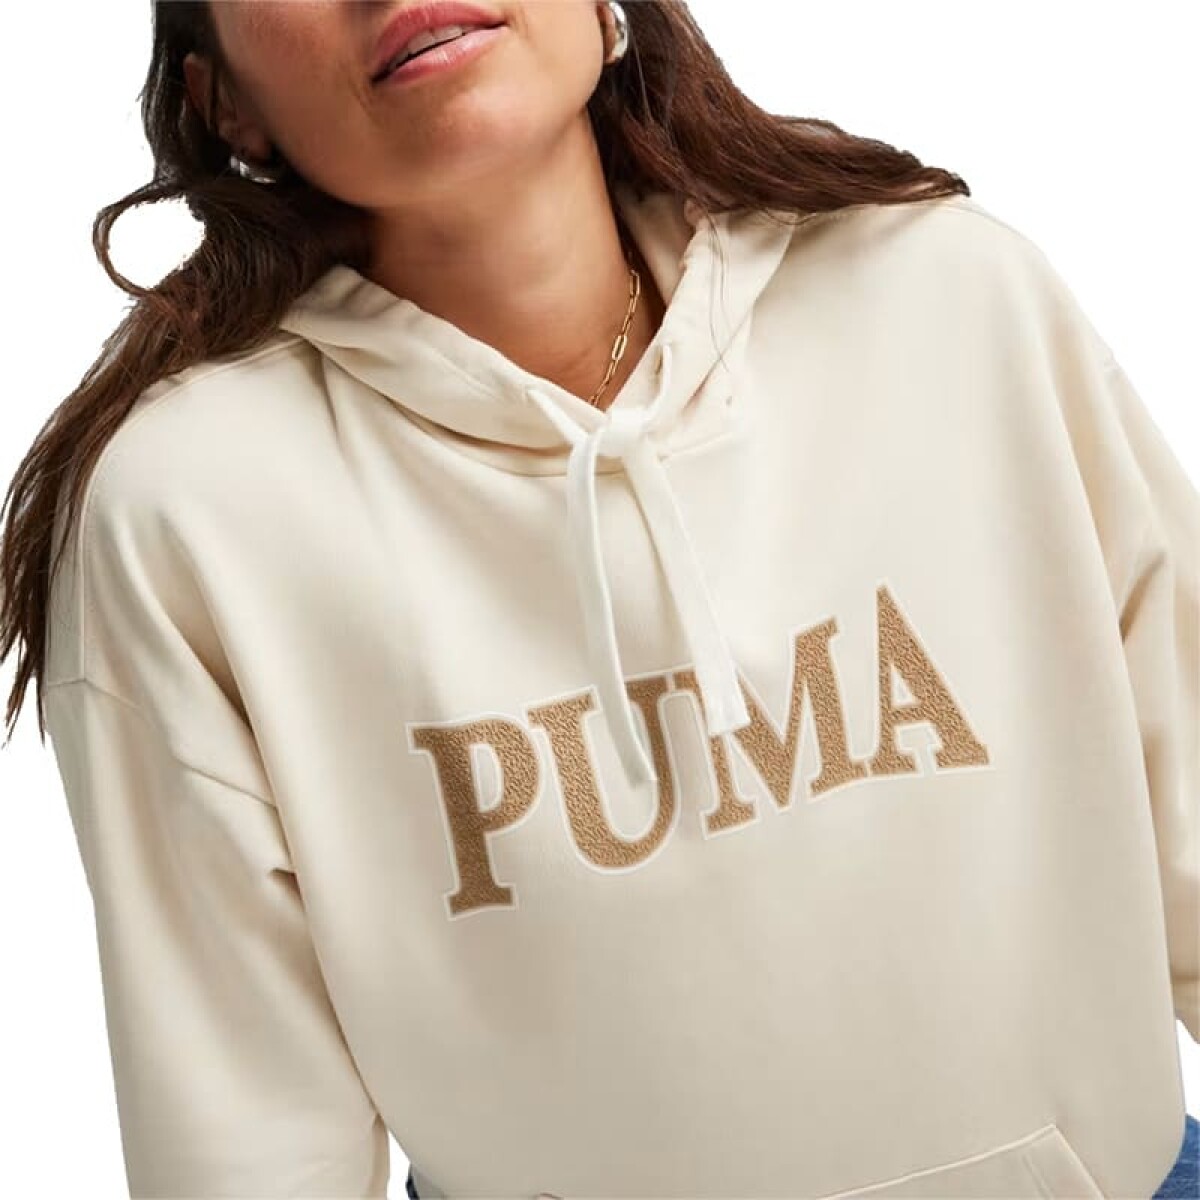 Lifestyle - Puma - Puma Canguro SQUAD Hoodie TR de Mujer - 677899 87 - Arena 